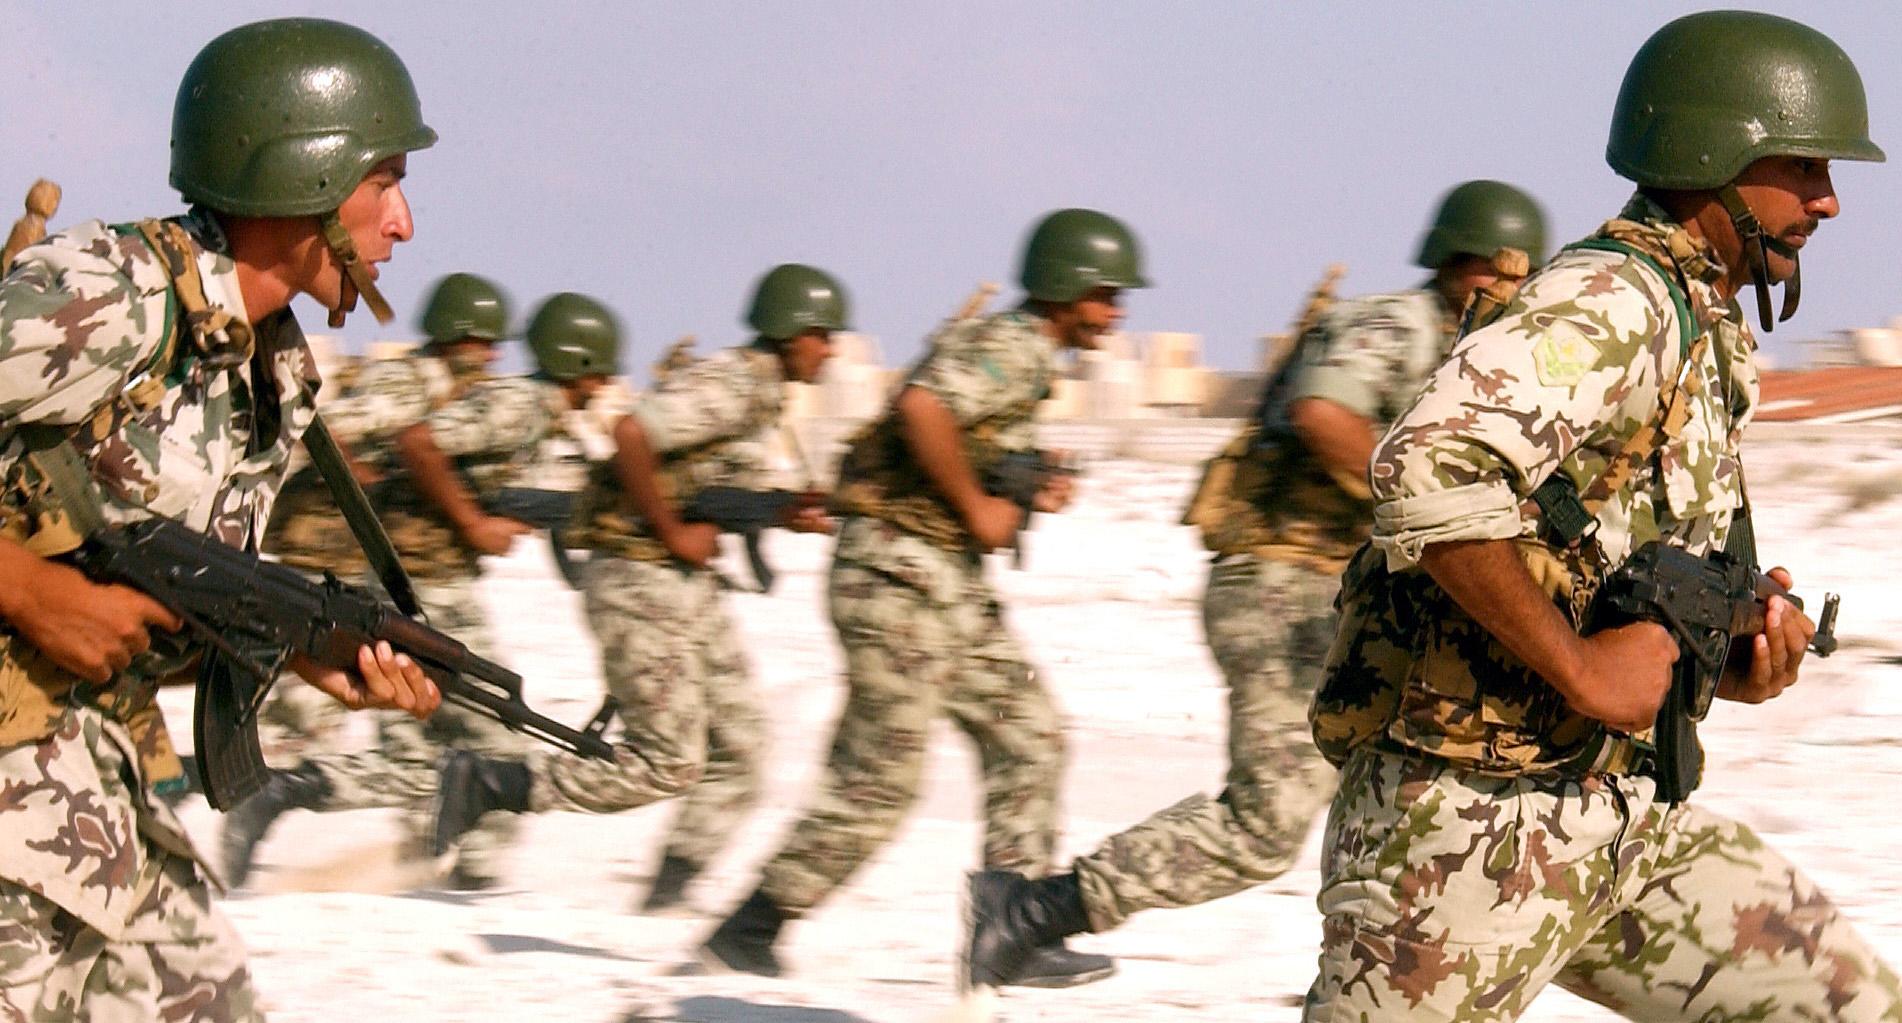 صورة الجيش المصري ينفّذ عملية تحرير روتينية من أيدي المتطرّفين في سيناء